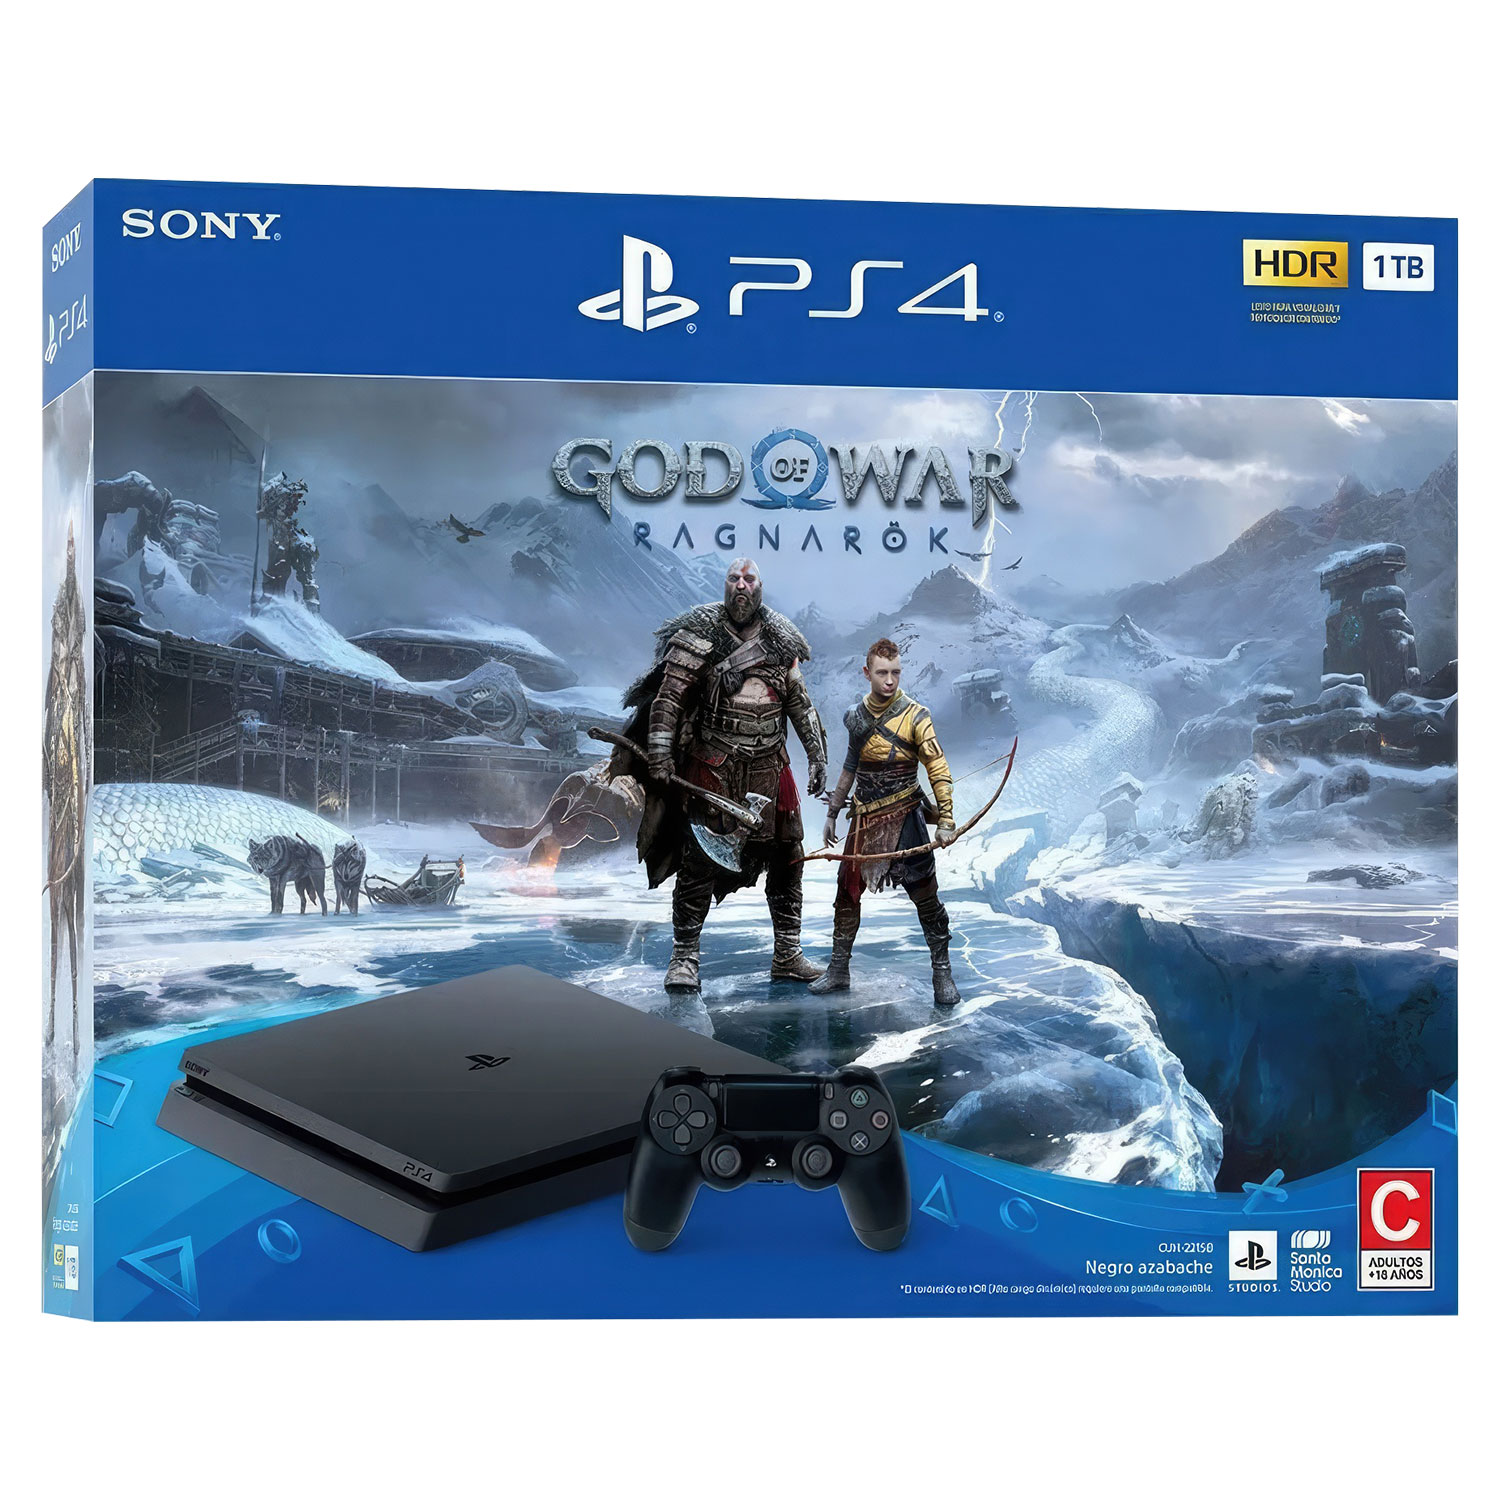 Console Sony Playstation 4 God Of War Ragnarok CUH-2215B 1TB SSD